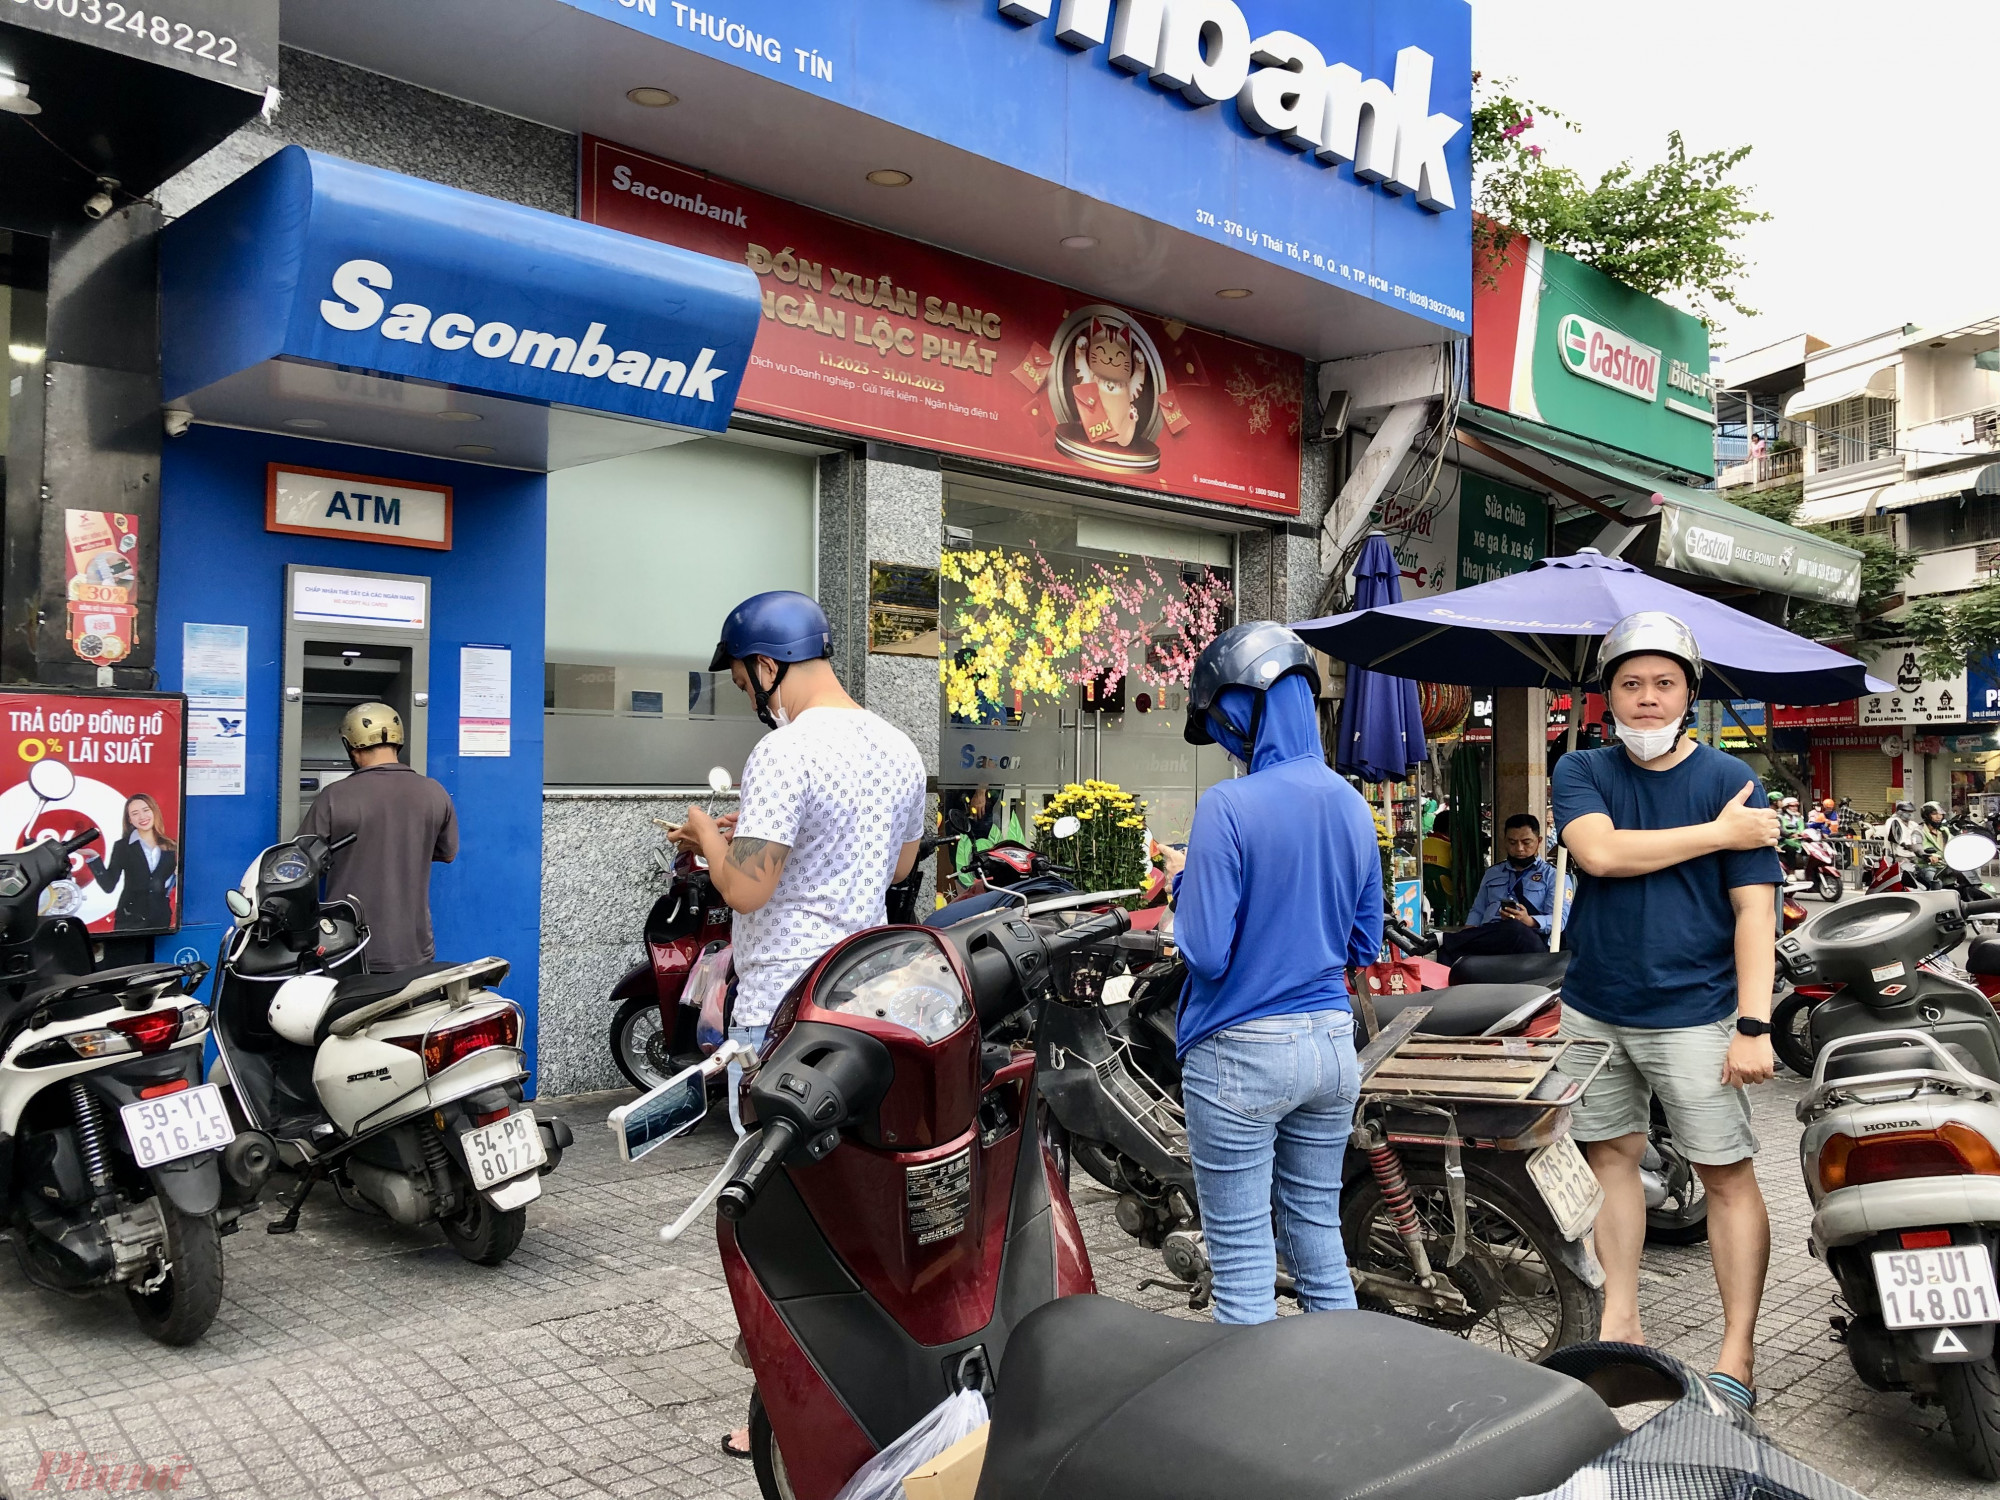 Tại các trụ ATM thuộcc các quận xa hơn cũng không có cảnh xếp hàng chờ rút tiền. Như tại trụ ATM ngân hàng TMCP Sài Gòn Thương Tín (Sacombank) chỉ vài khách chờ rút, mỗi khách chỉ chờ khoảng 5 phút là đến lượt rút. 